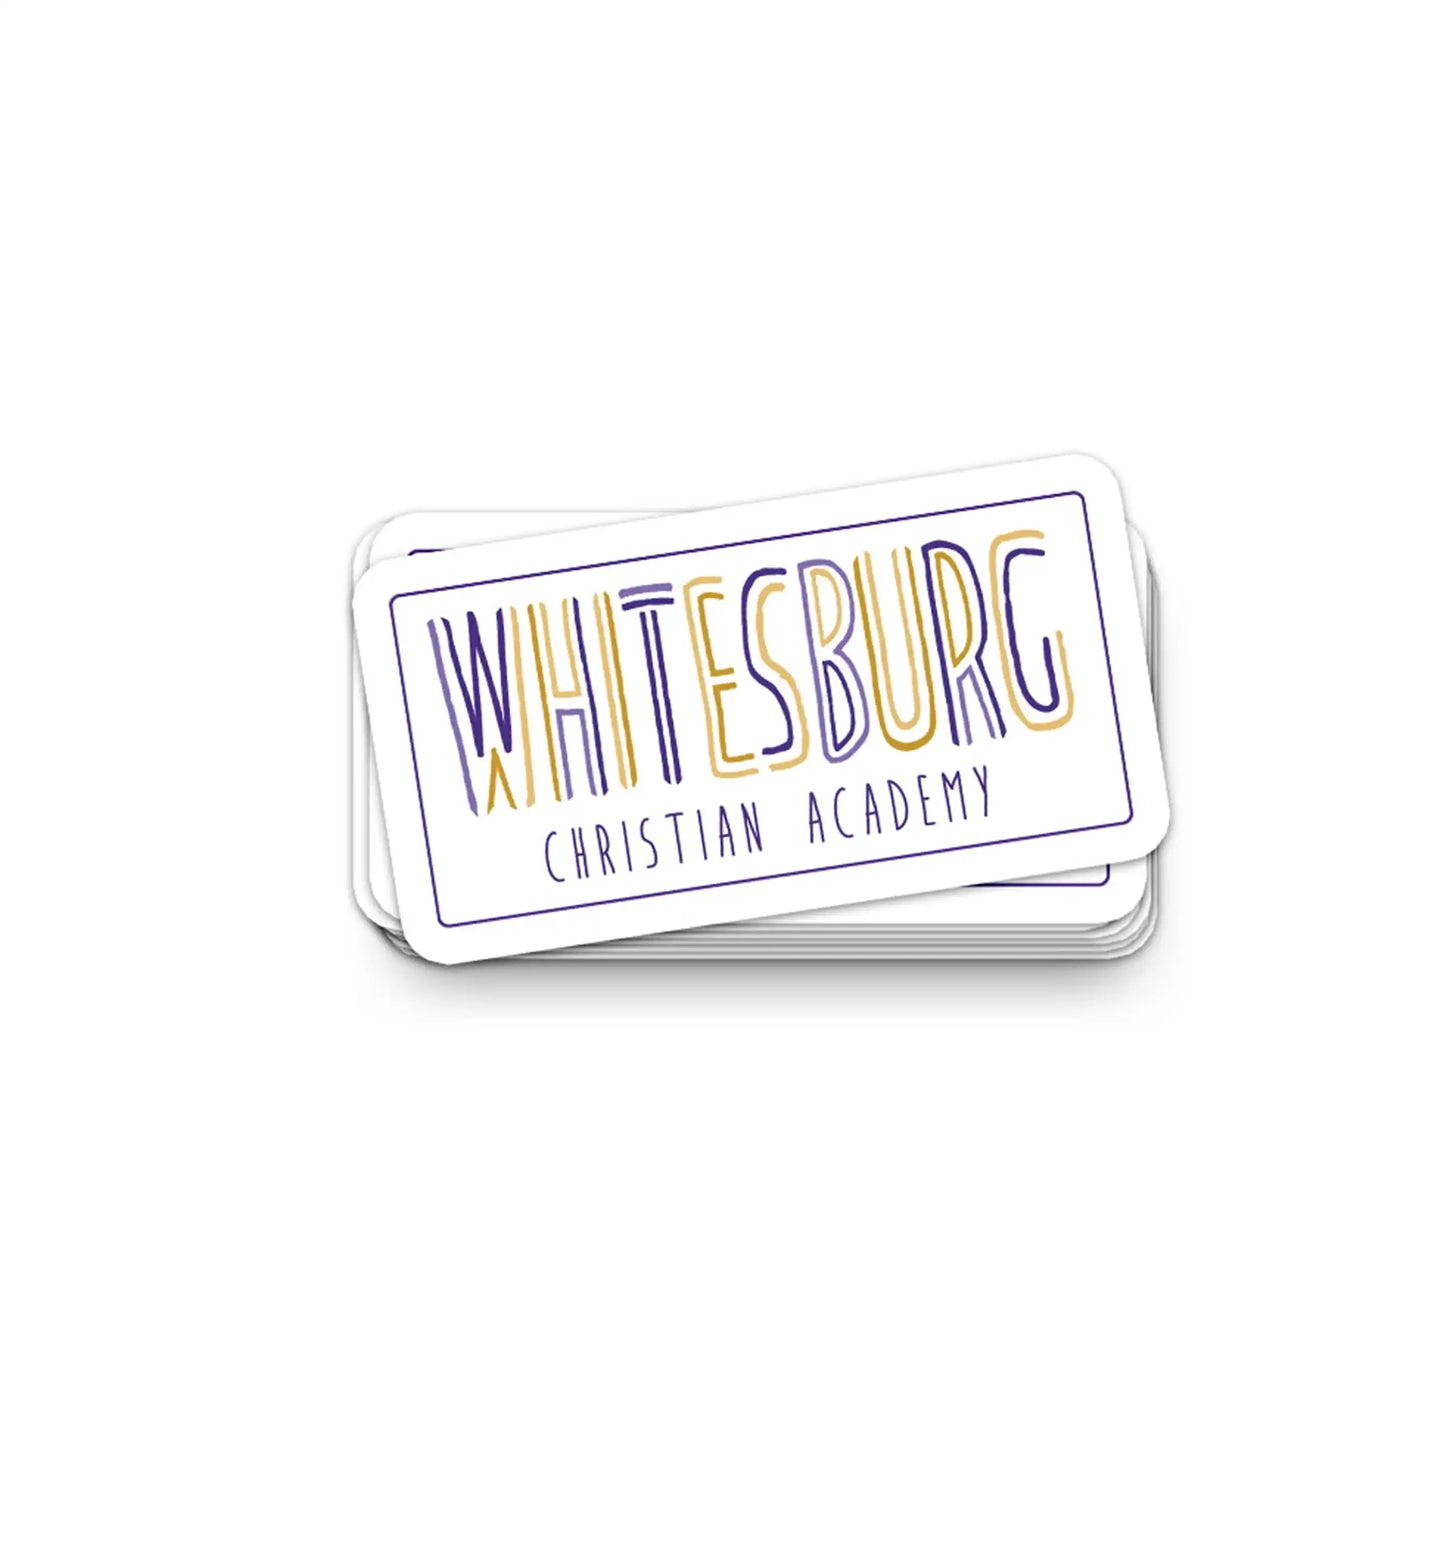 Whitesburg Lines Sticker - 4" x 2"